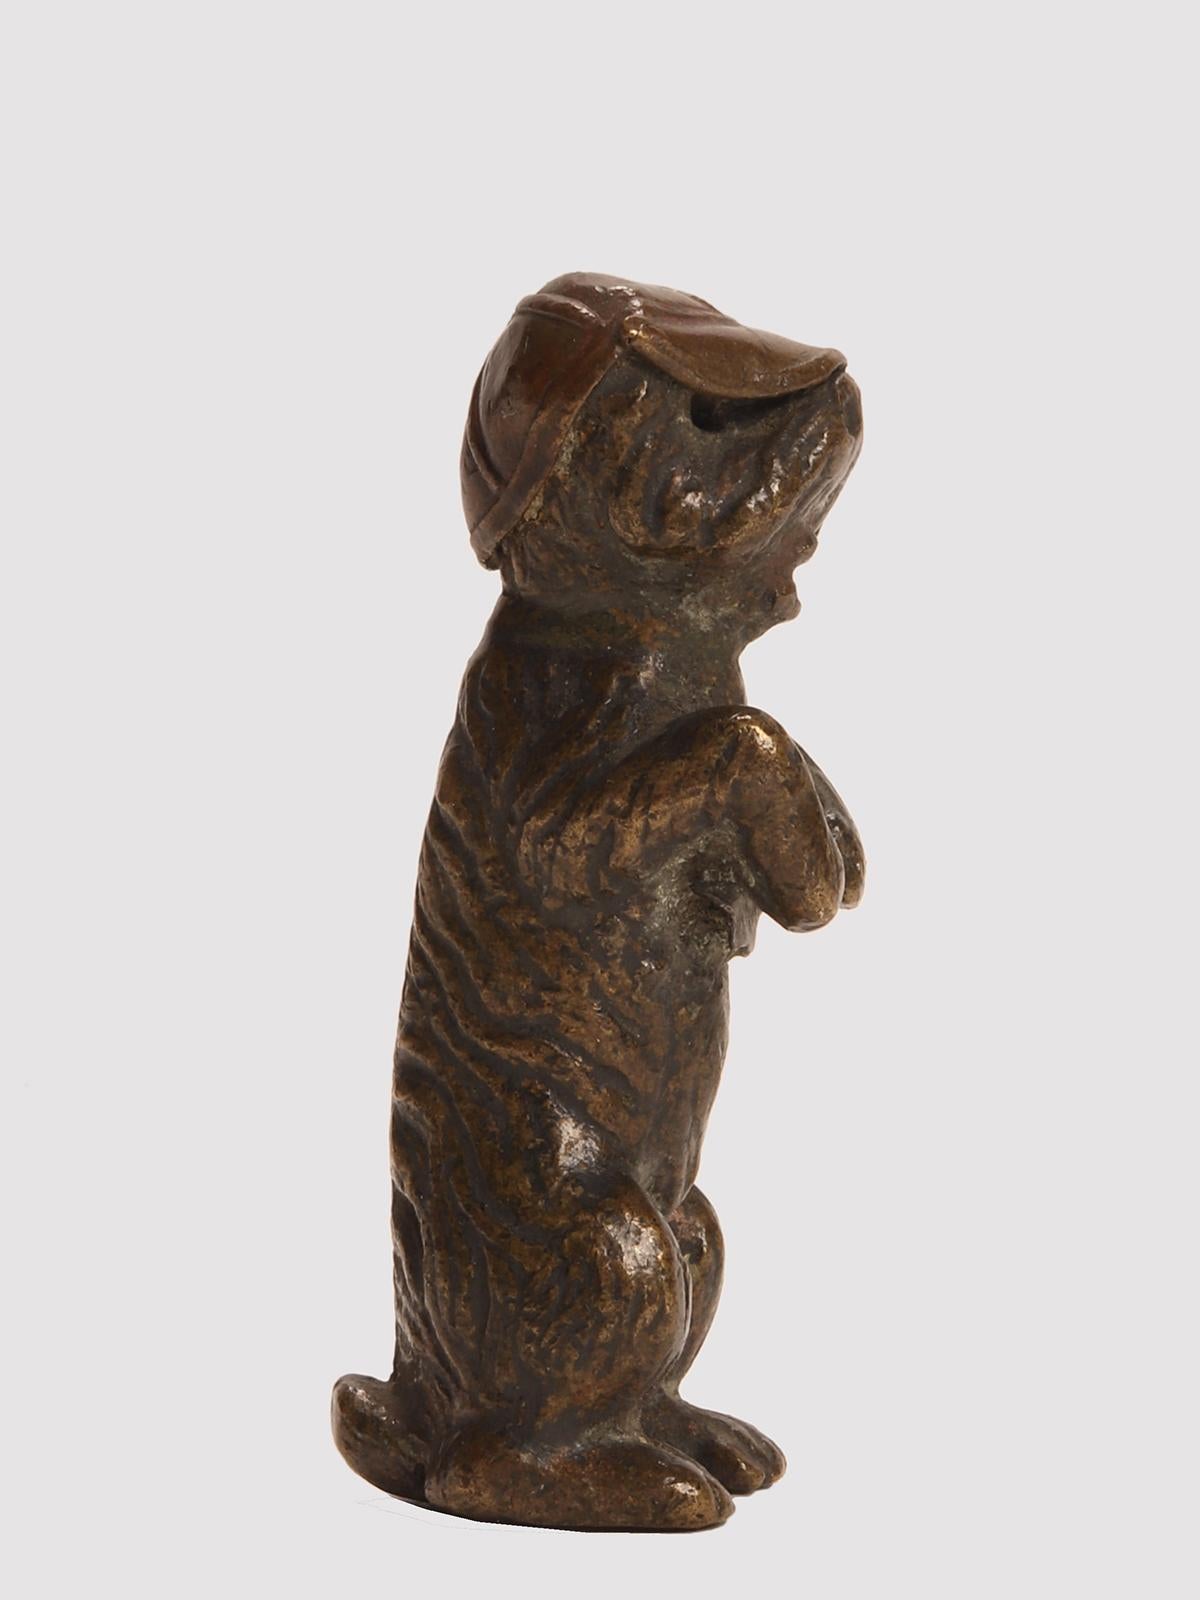 Bronze de Vienne représentant un chien Terrier debout, portant une casquette. Wien, Autriche, vers 1900.